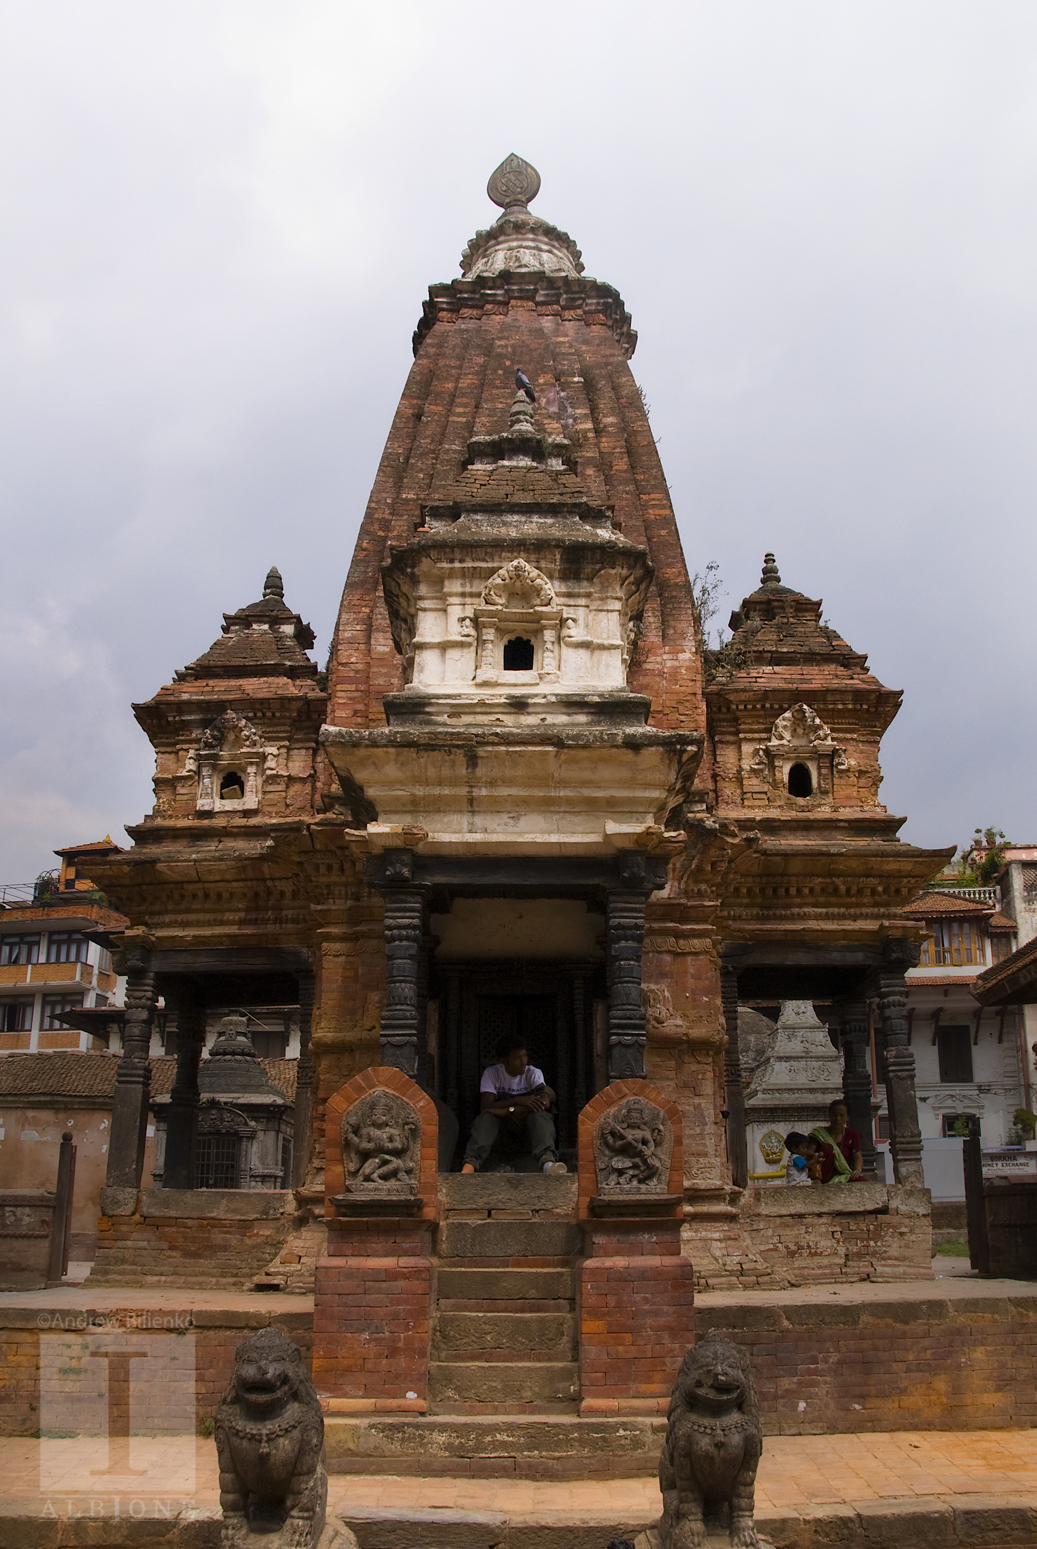 PHOTOTRIP. Непал. Катманду - дом для 10.000.000 богов. ©Андрей Билиенко